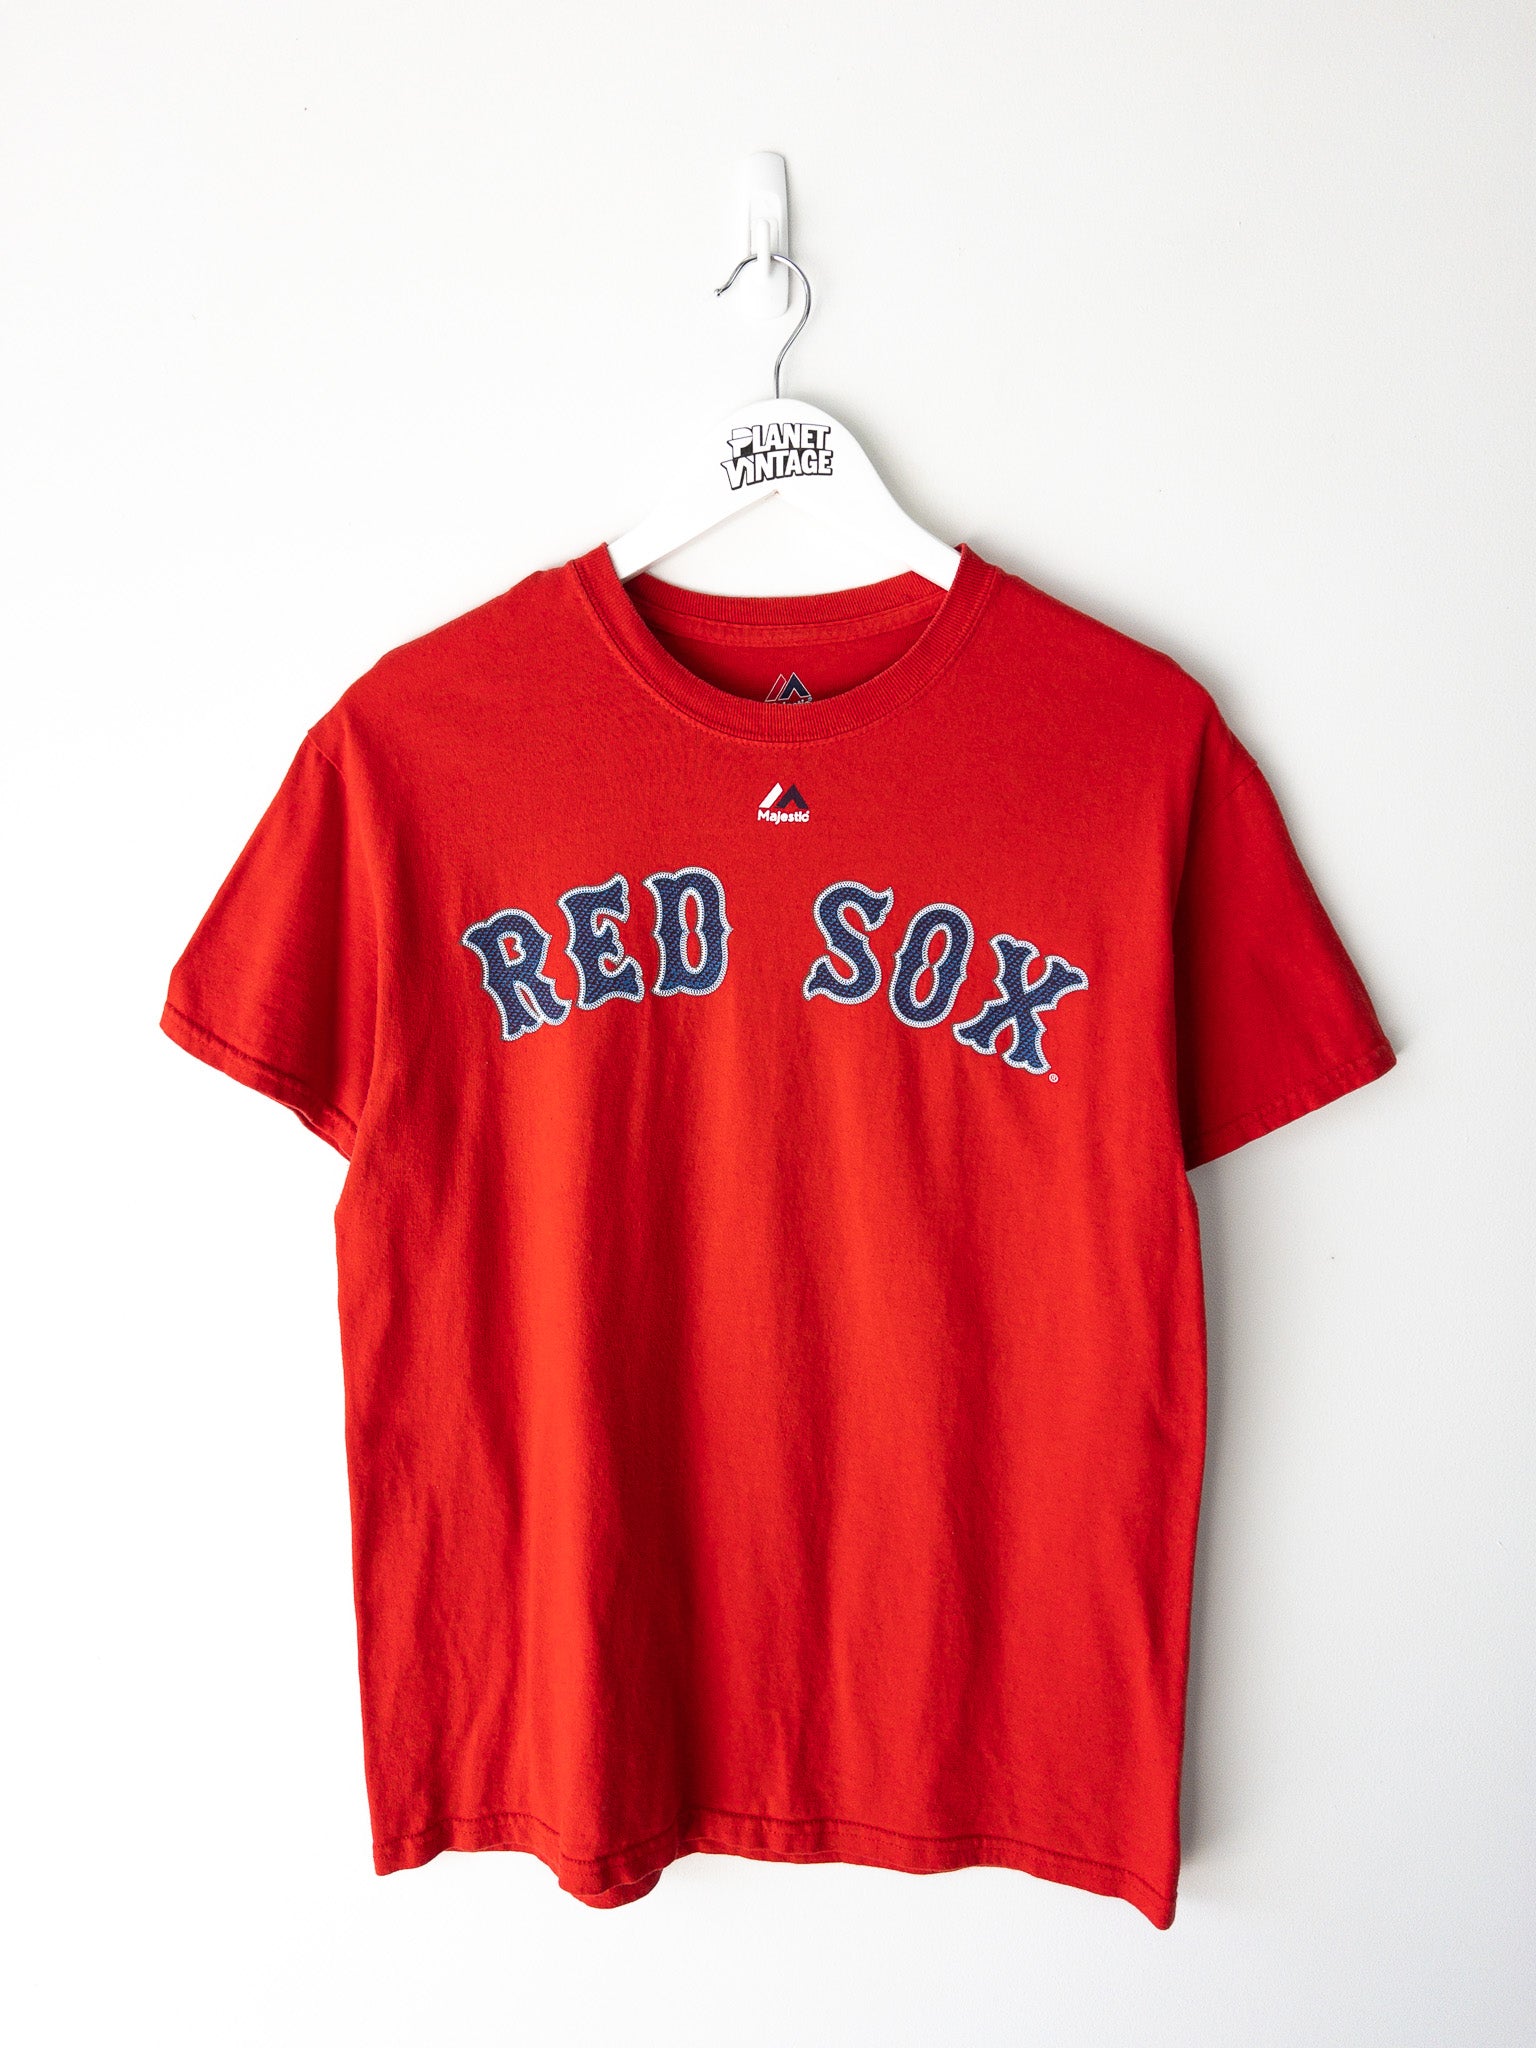 Vintage Red Sox Ortiz Tee (S)